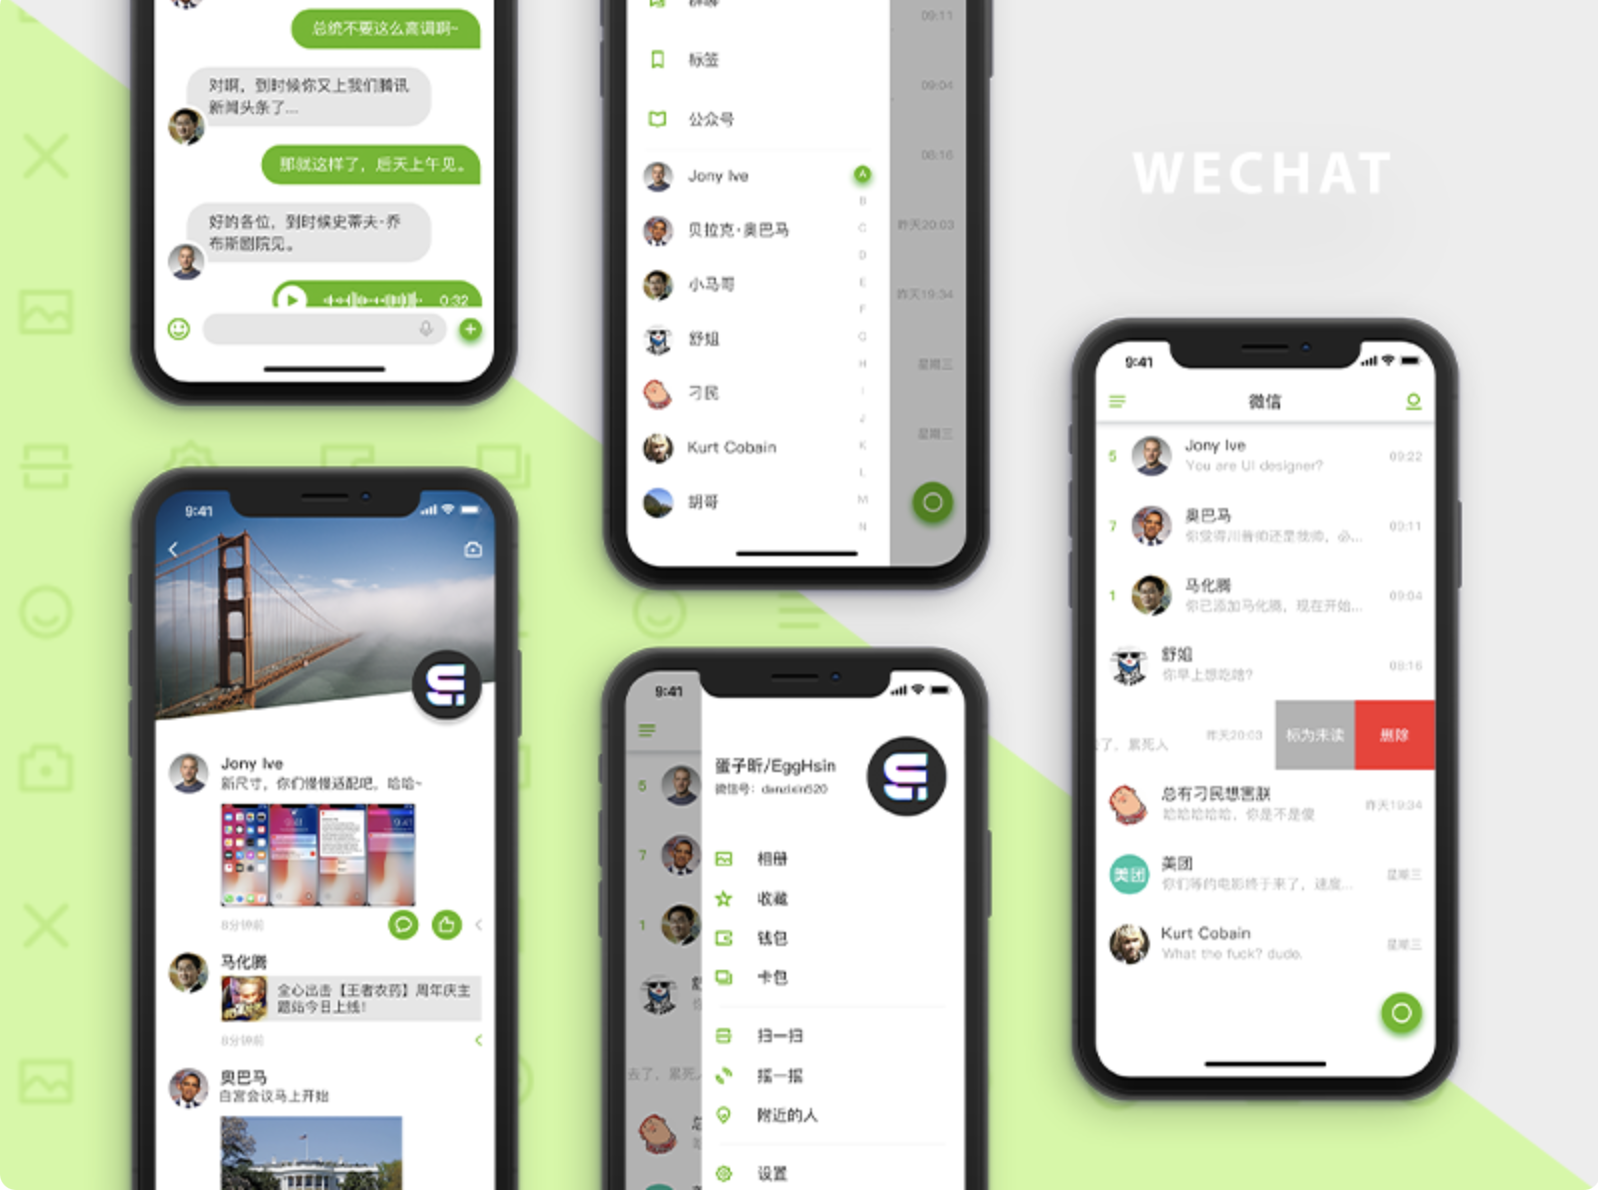 WeChatは便利で機能的なメッセンジャーで、快適なインターフェースと膨大な数の追加サービスを備えています。WhatsAppやViberよりも豊富な機能を備えており、これがWeChatの人気の理由です。